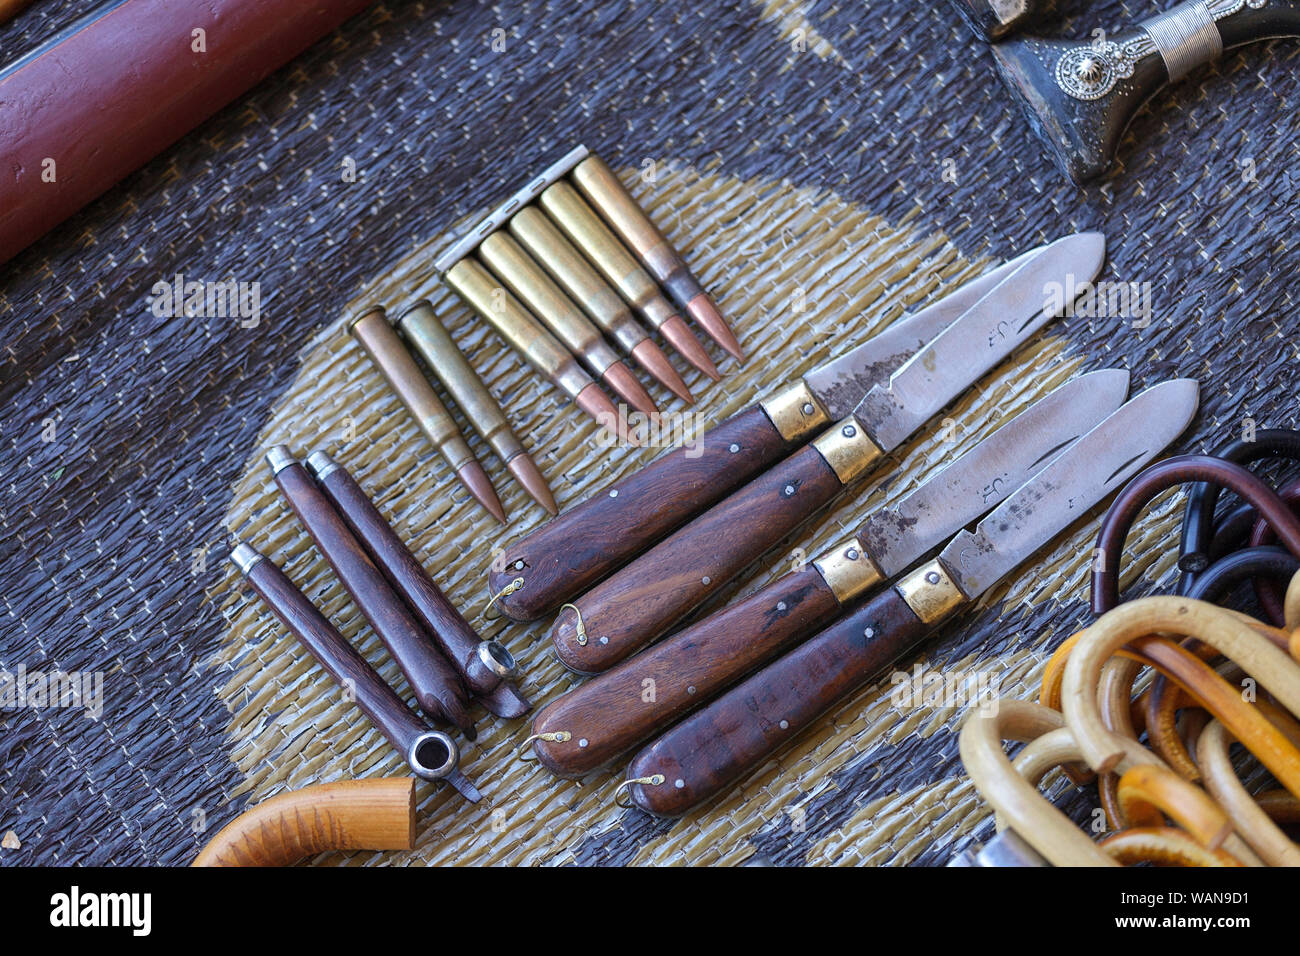 Des couteaux, des bâtons et des balles sur l'affichage pour vendre au marché de Sinaw, Oman Banque D'Images